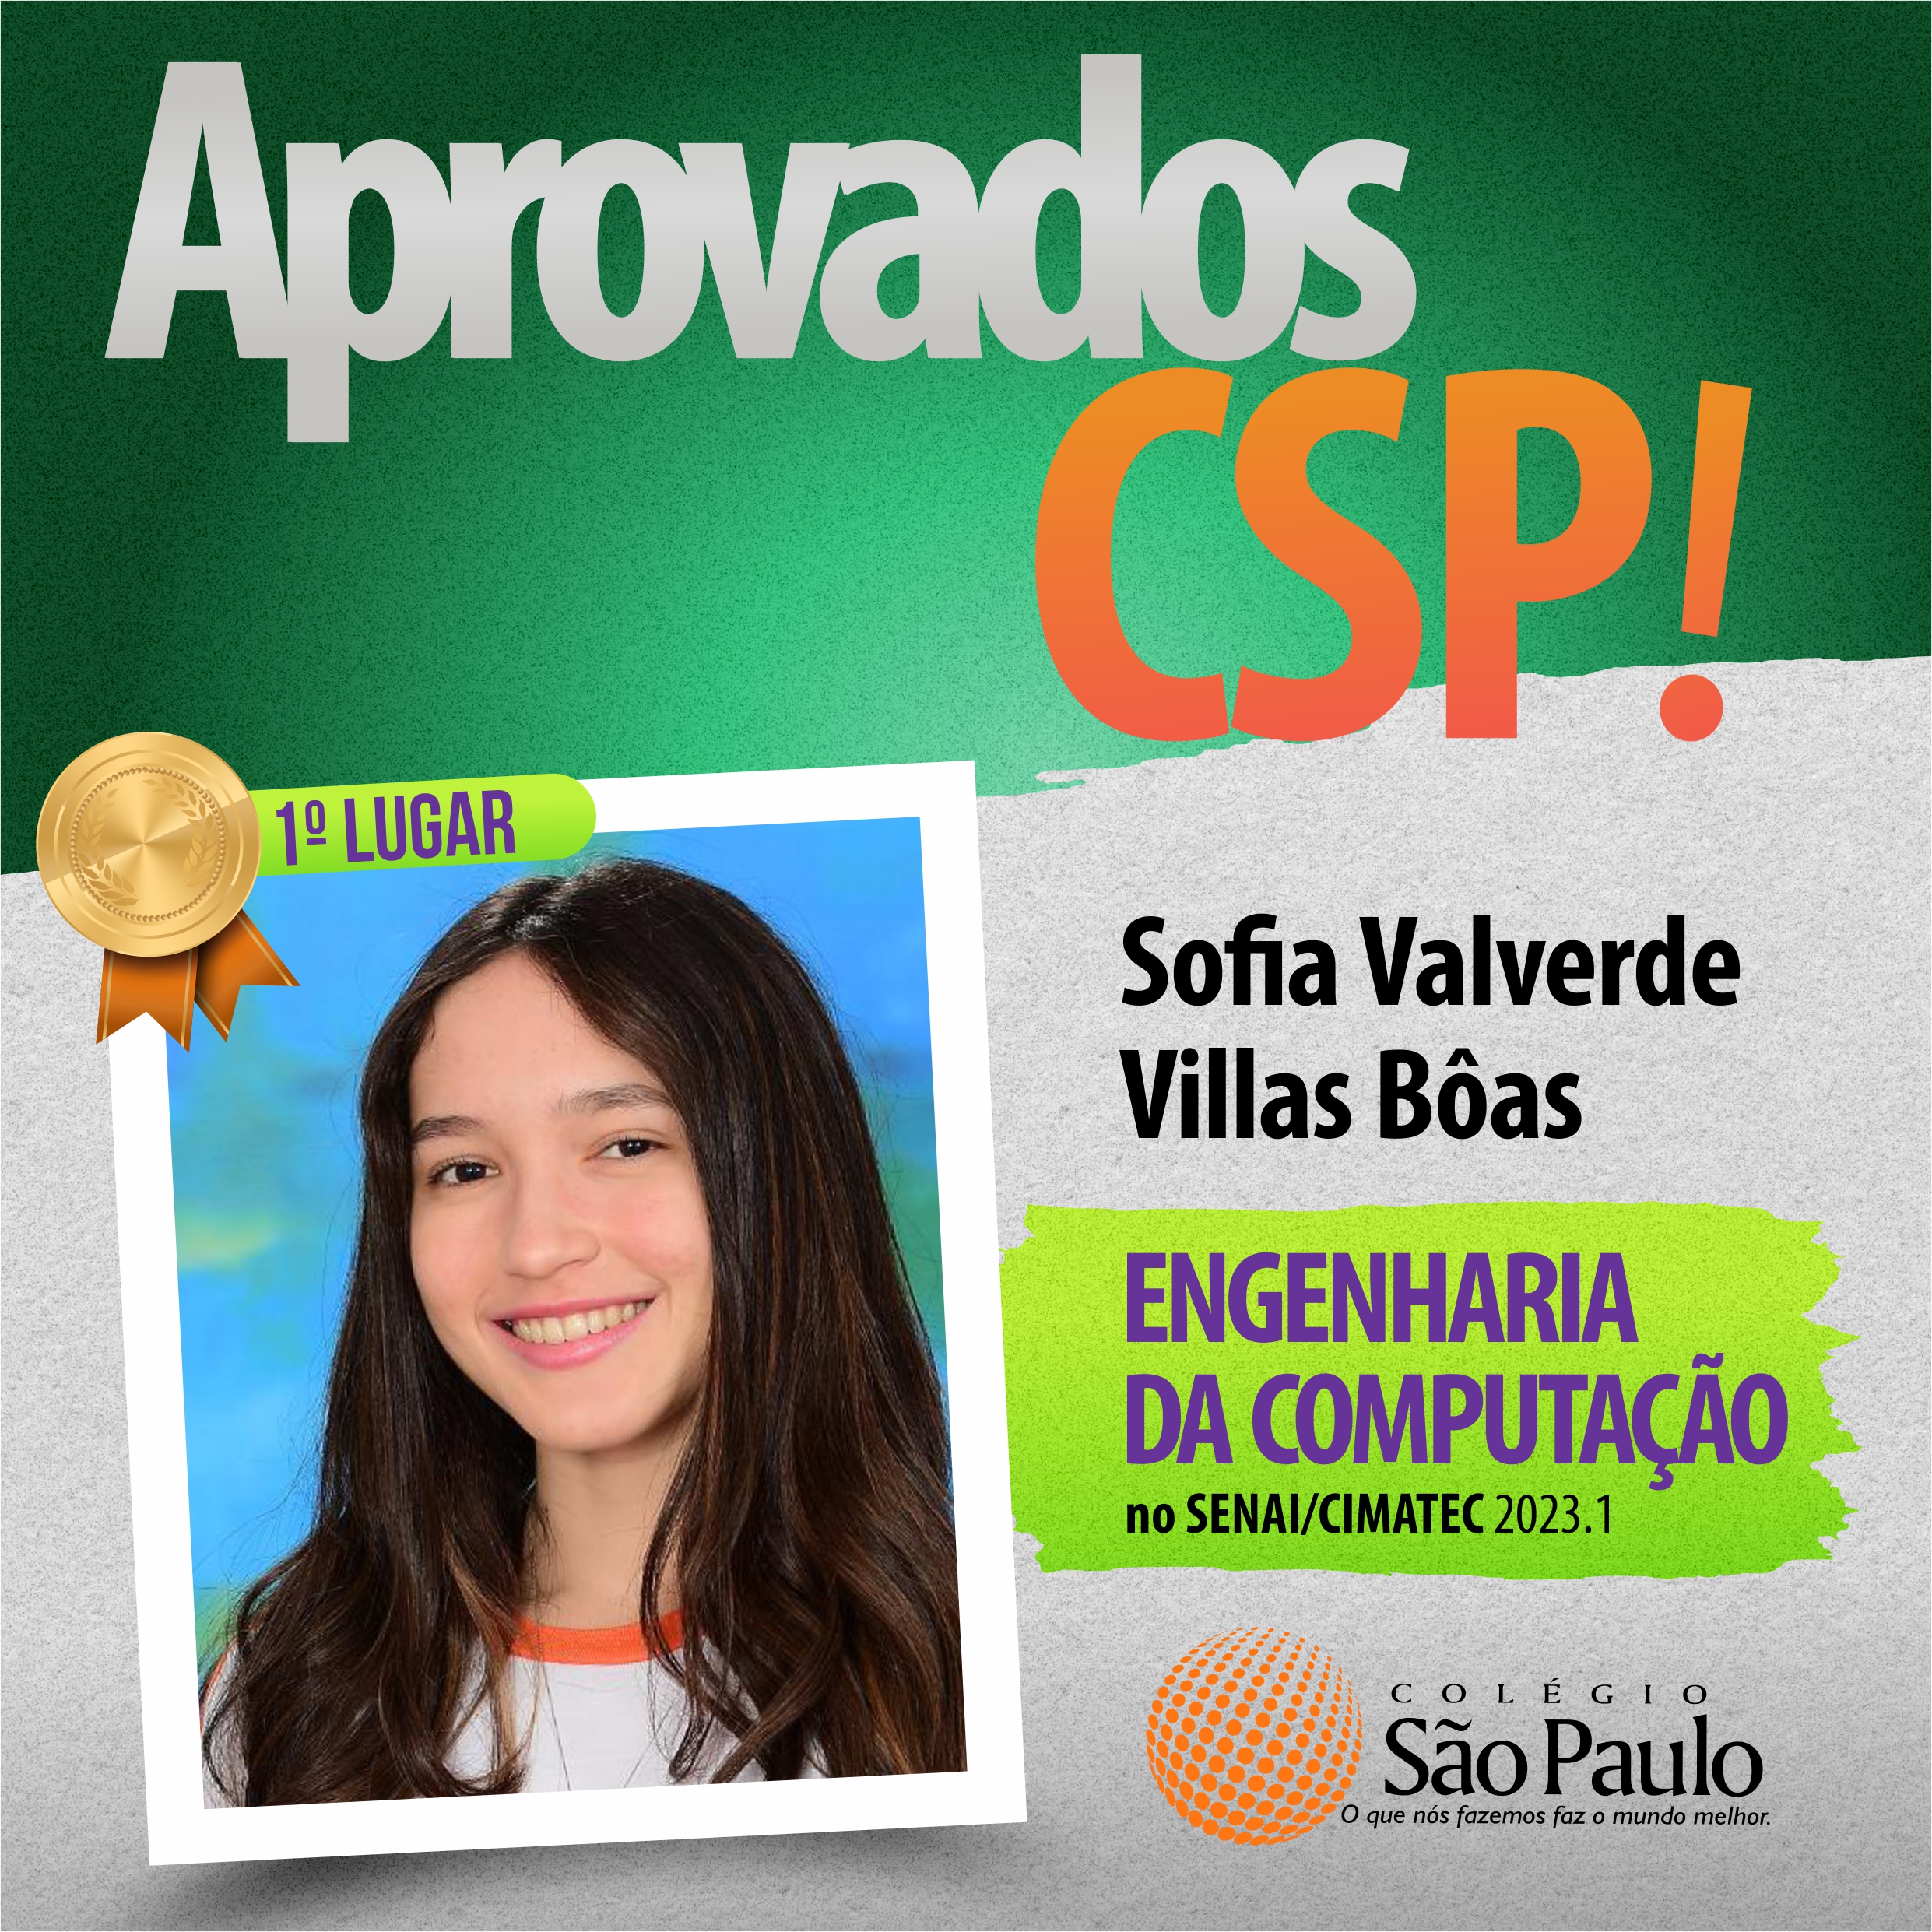 Sofia Valverde - Eng Computação